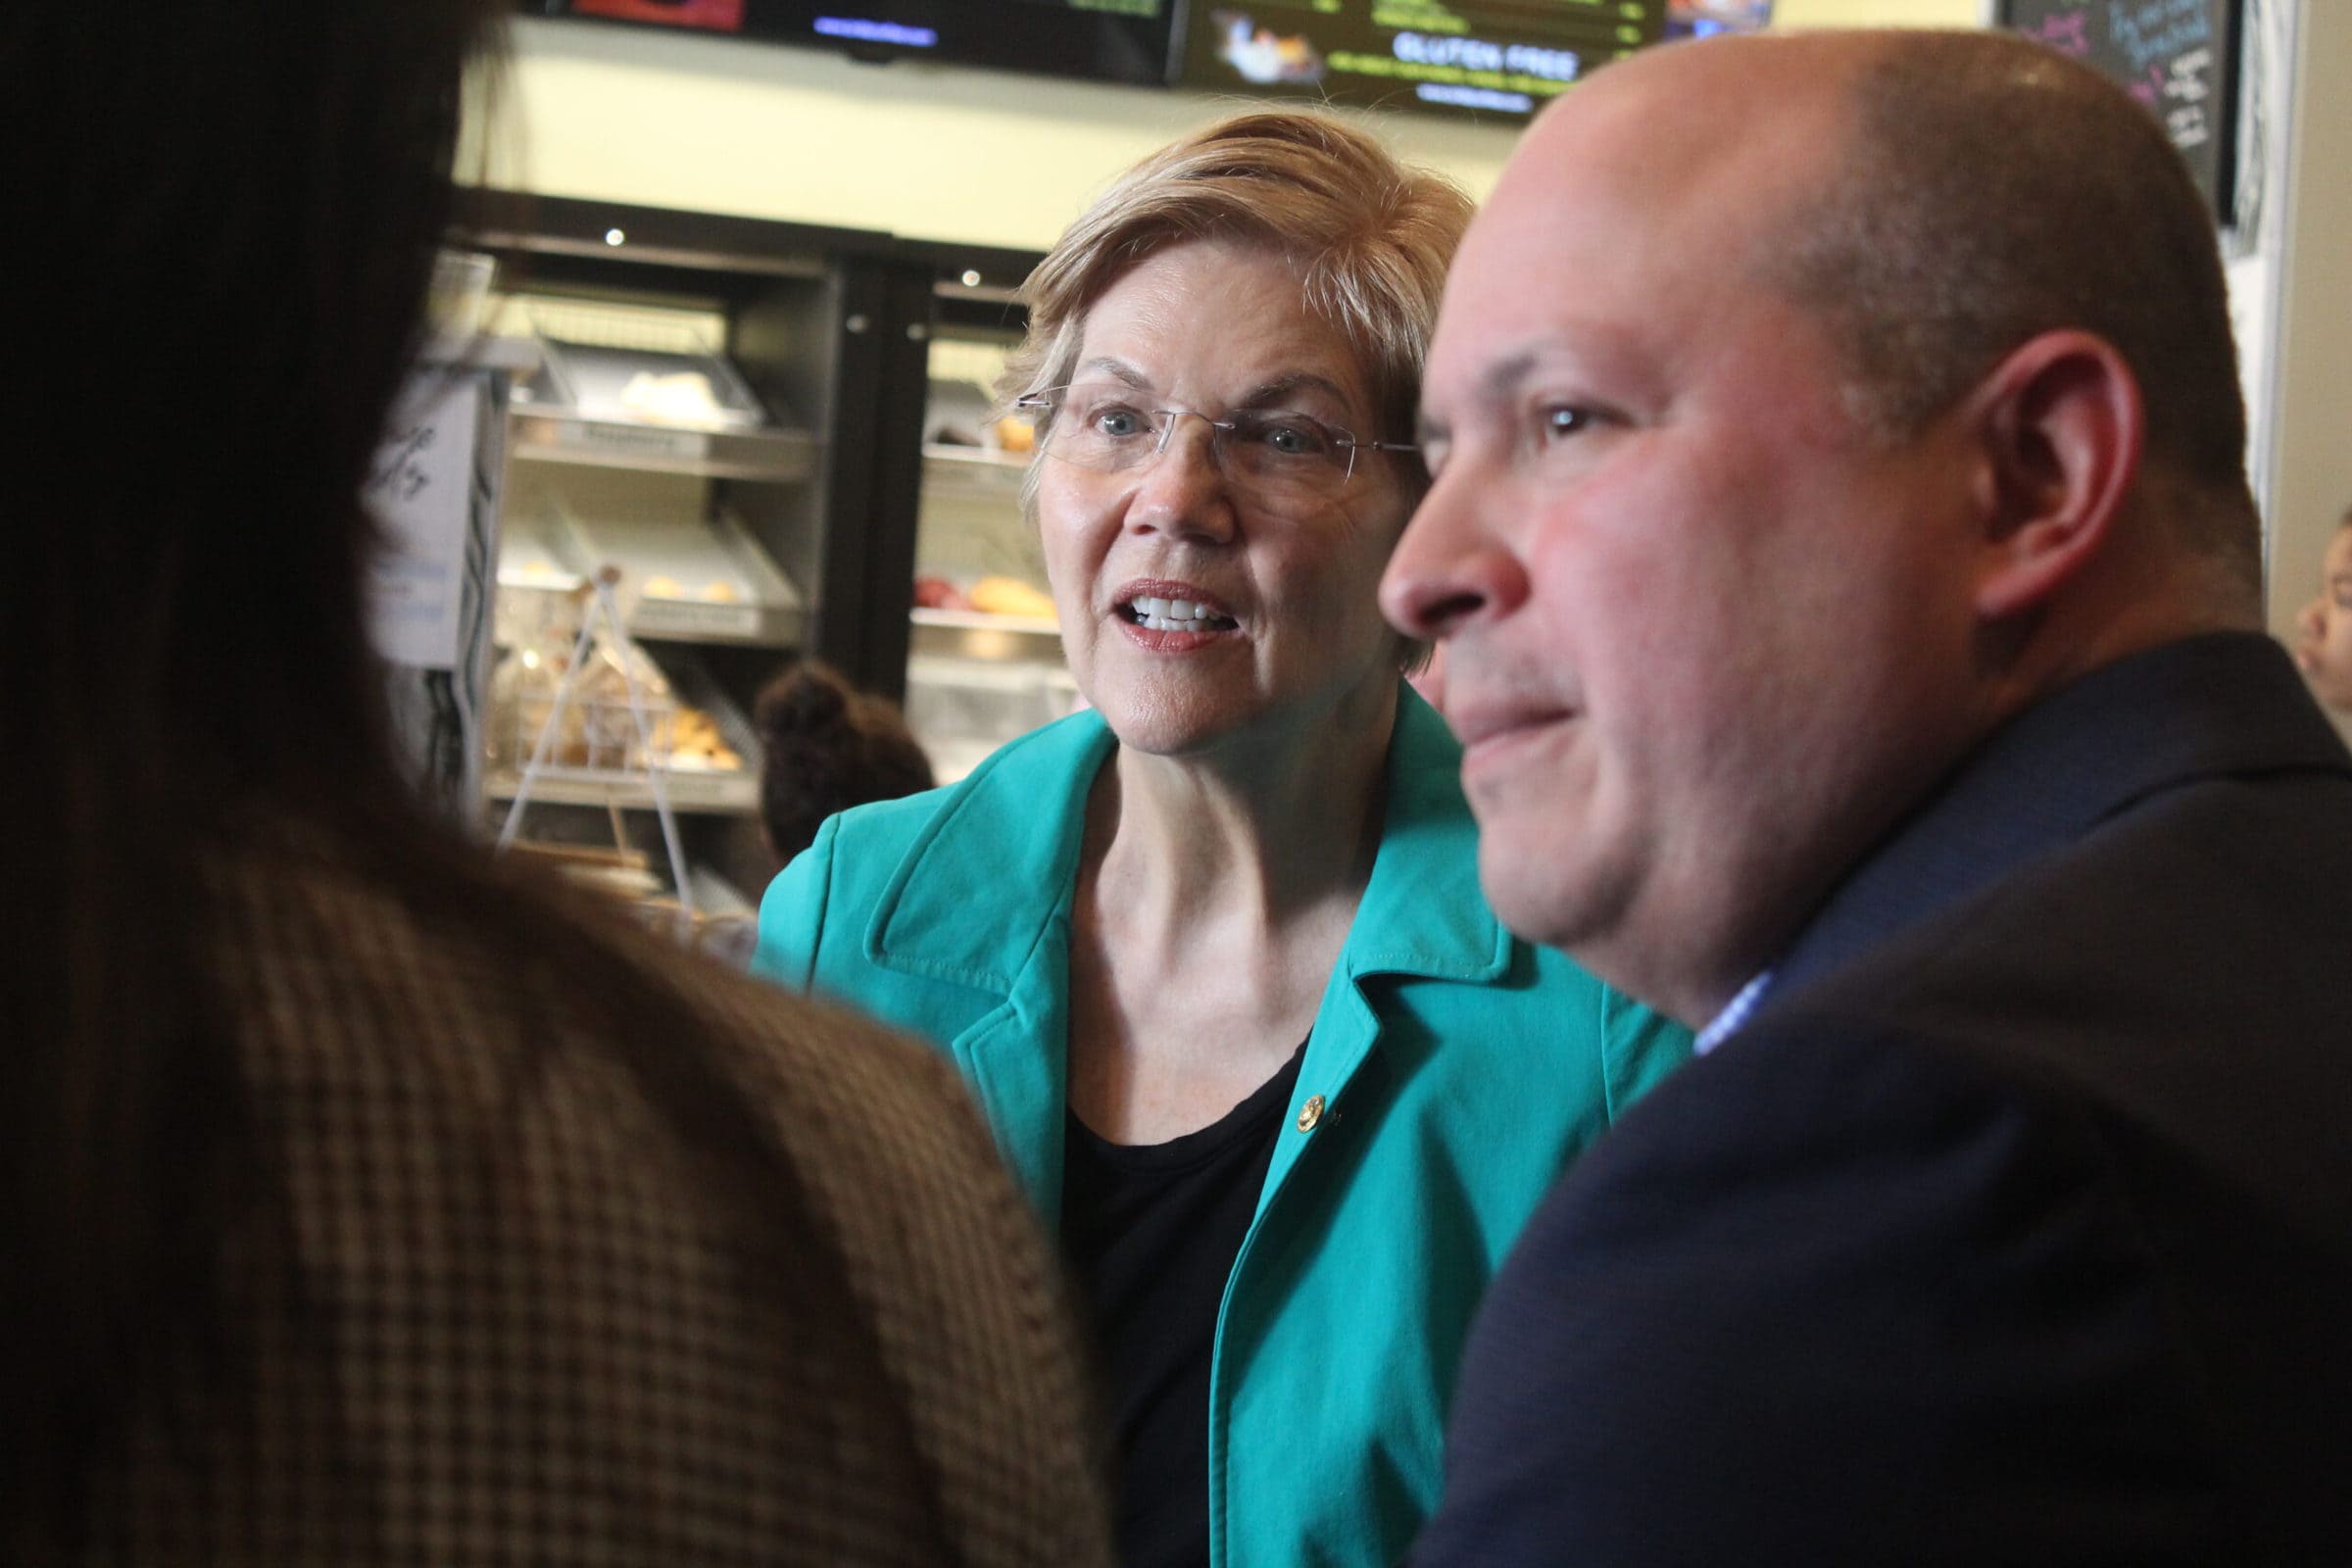 Sen. Elizabeth Warren visits Brilla Coffee in Northborough